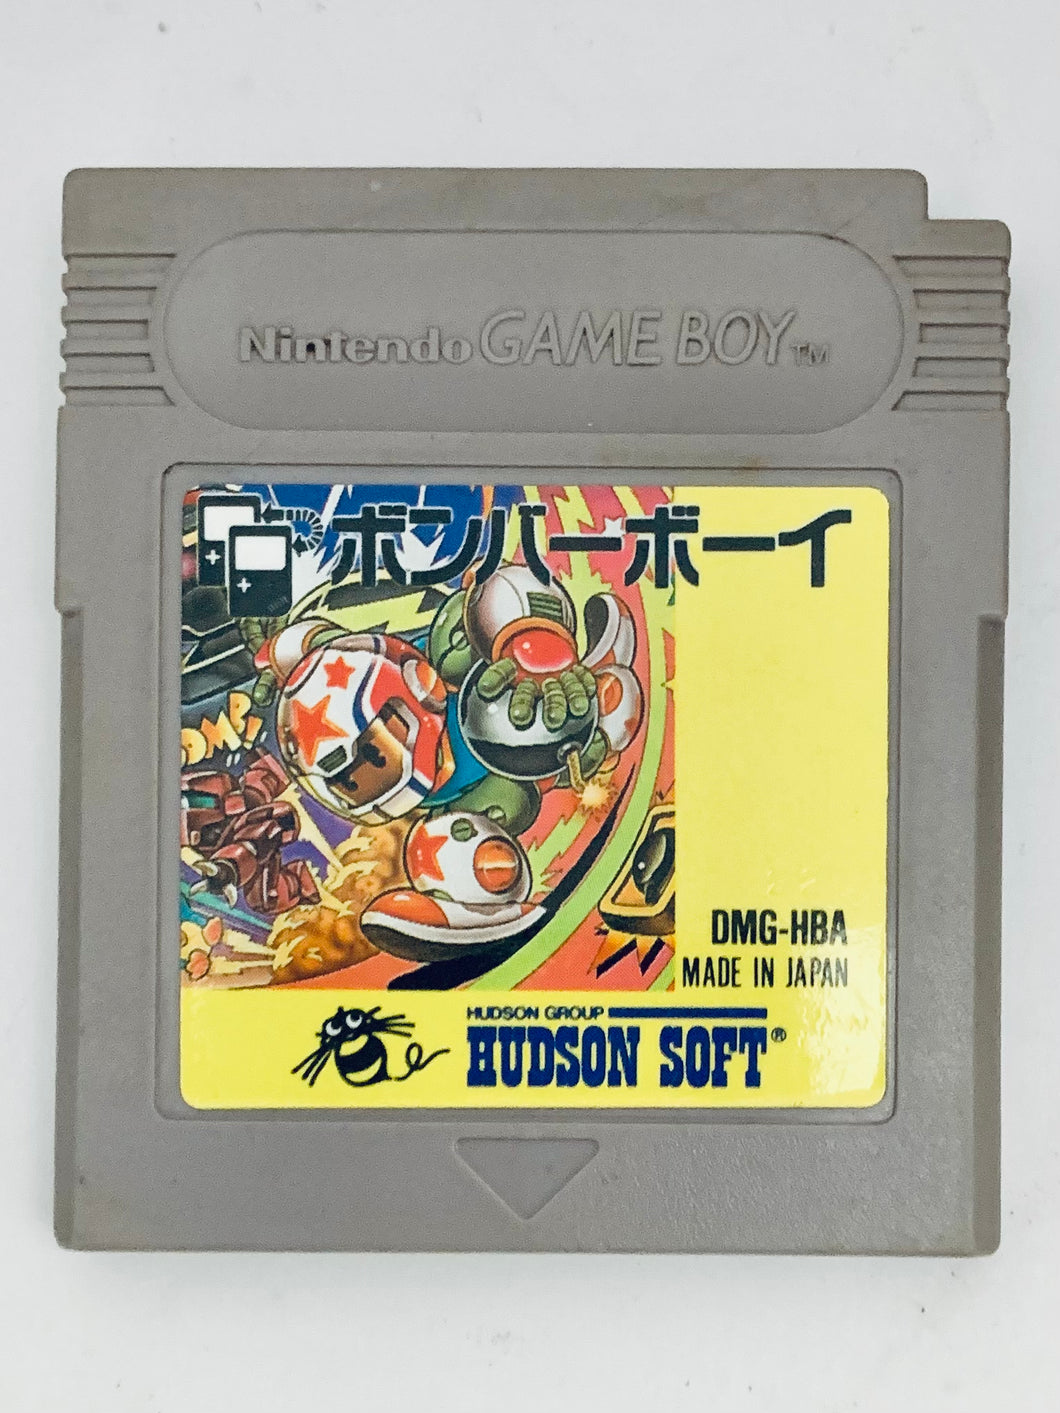 Bomber Boy - GameBoy - Game Boy - Pocket - GBC - GBA - JP - Cartridge (DMG-HBA-JPN)